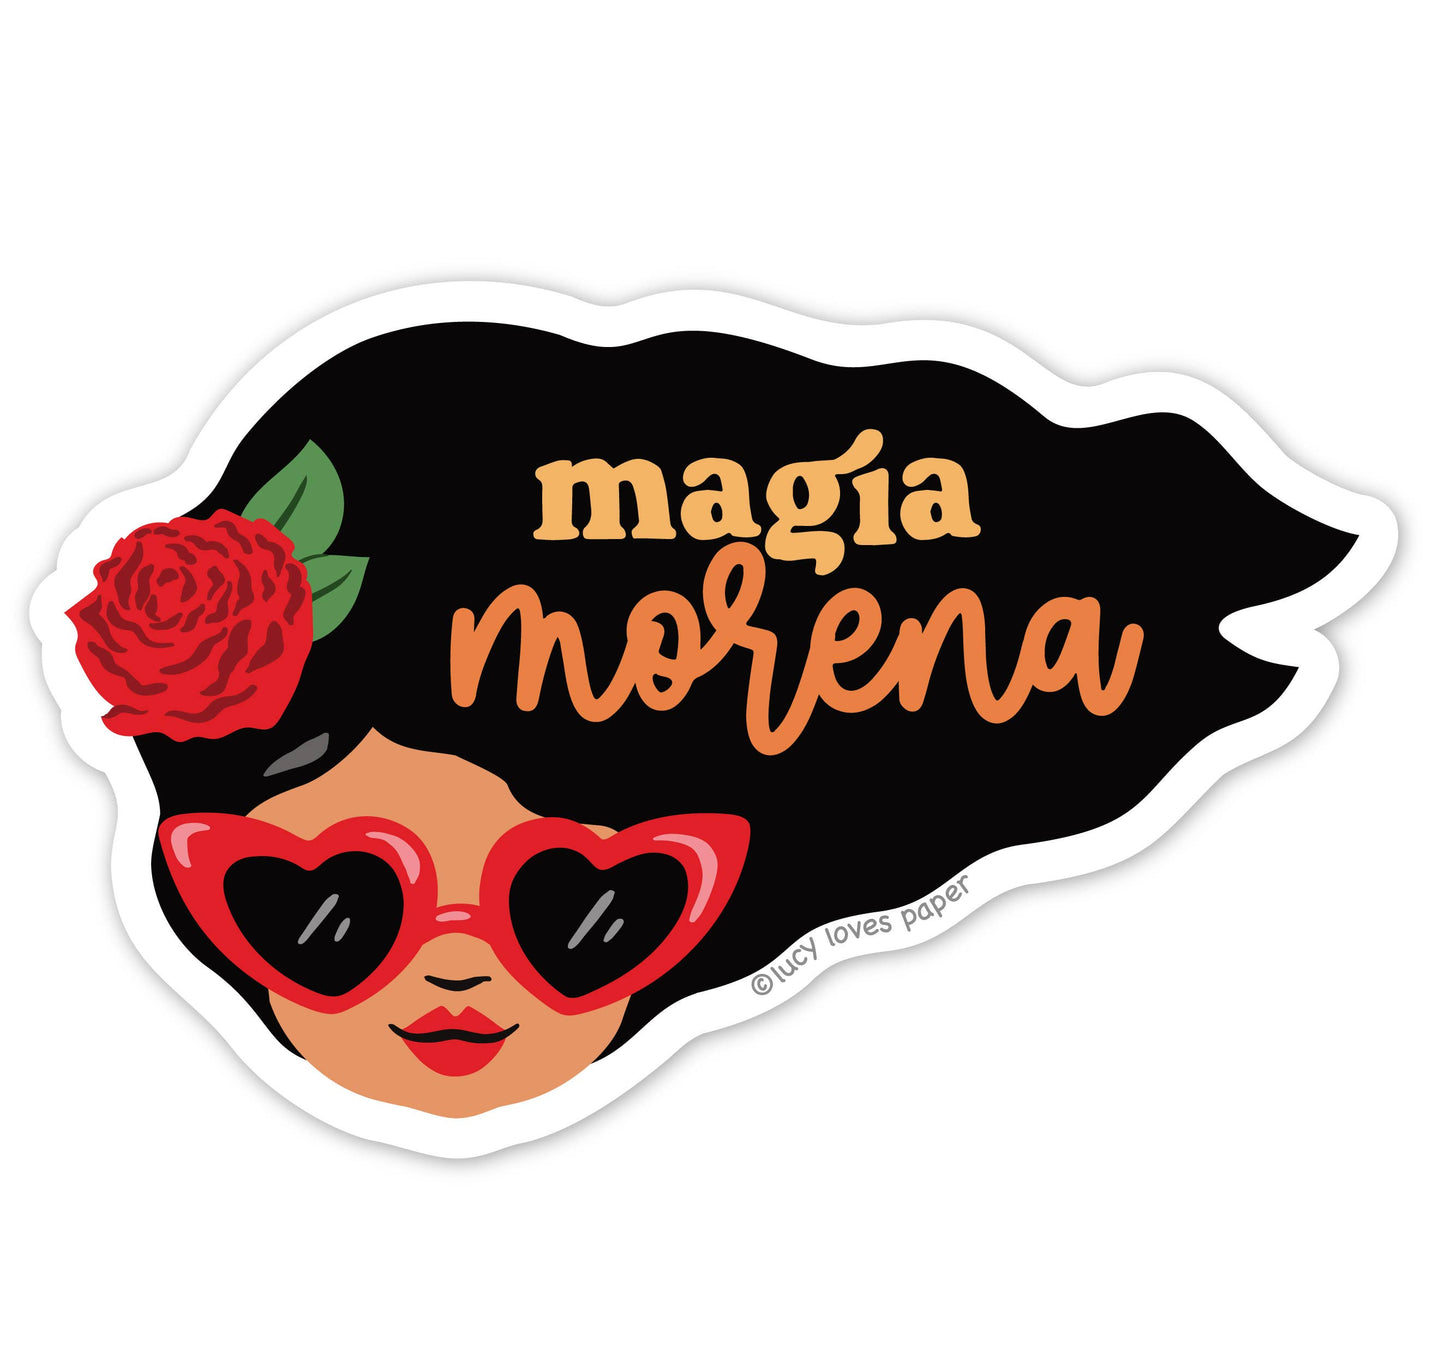 Magia Morena - Sticker in Spanish / Portuguese